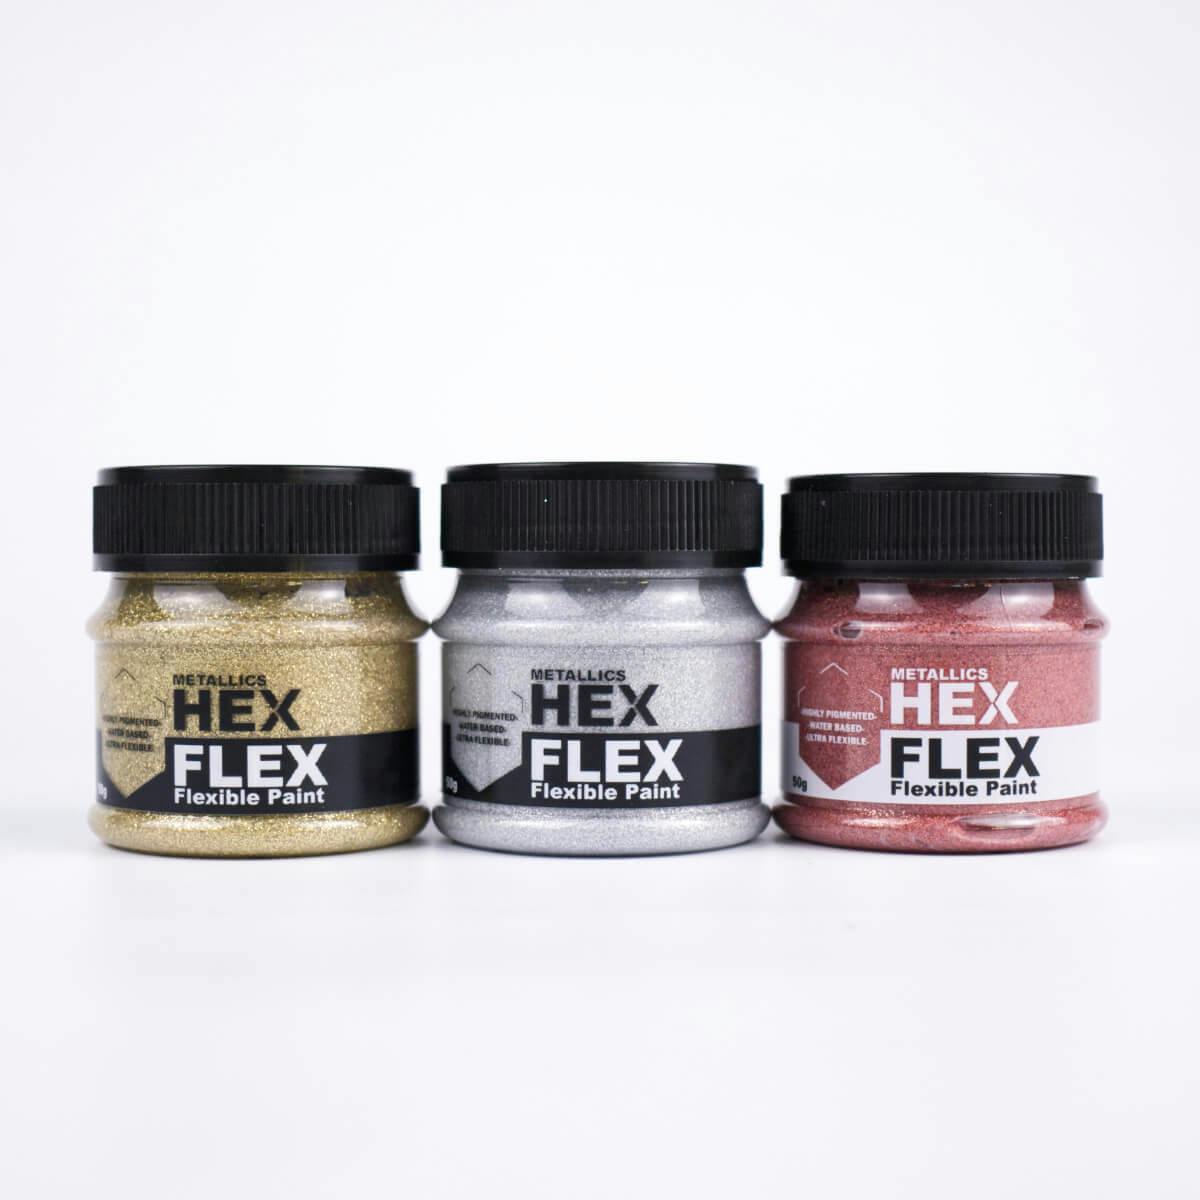 Ukázka všech tří třpytivých metalických barev HexFlex Metallics